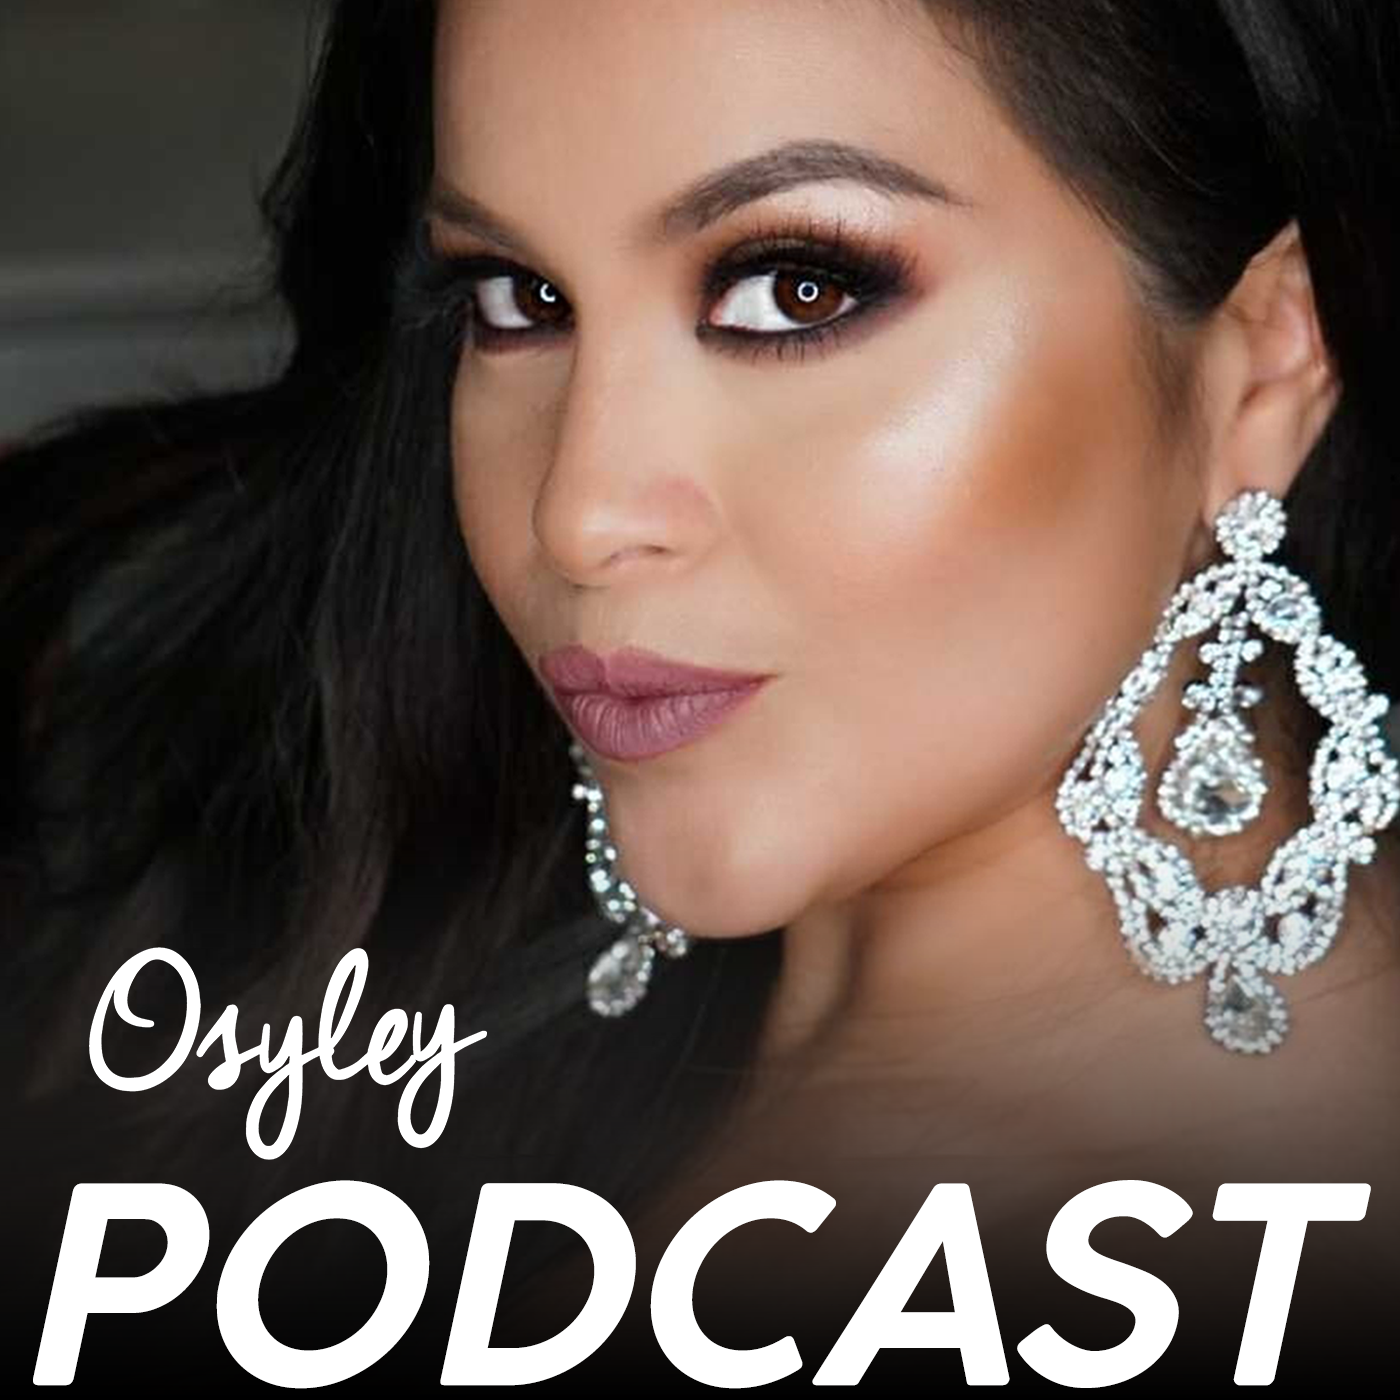 Osyley Podcast: Maquillaje, Peinado, Belleza y Mucho Mas